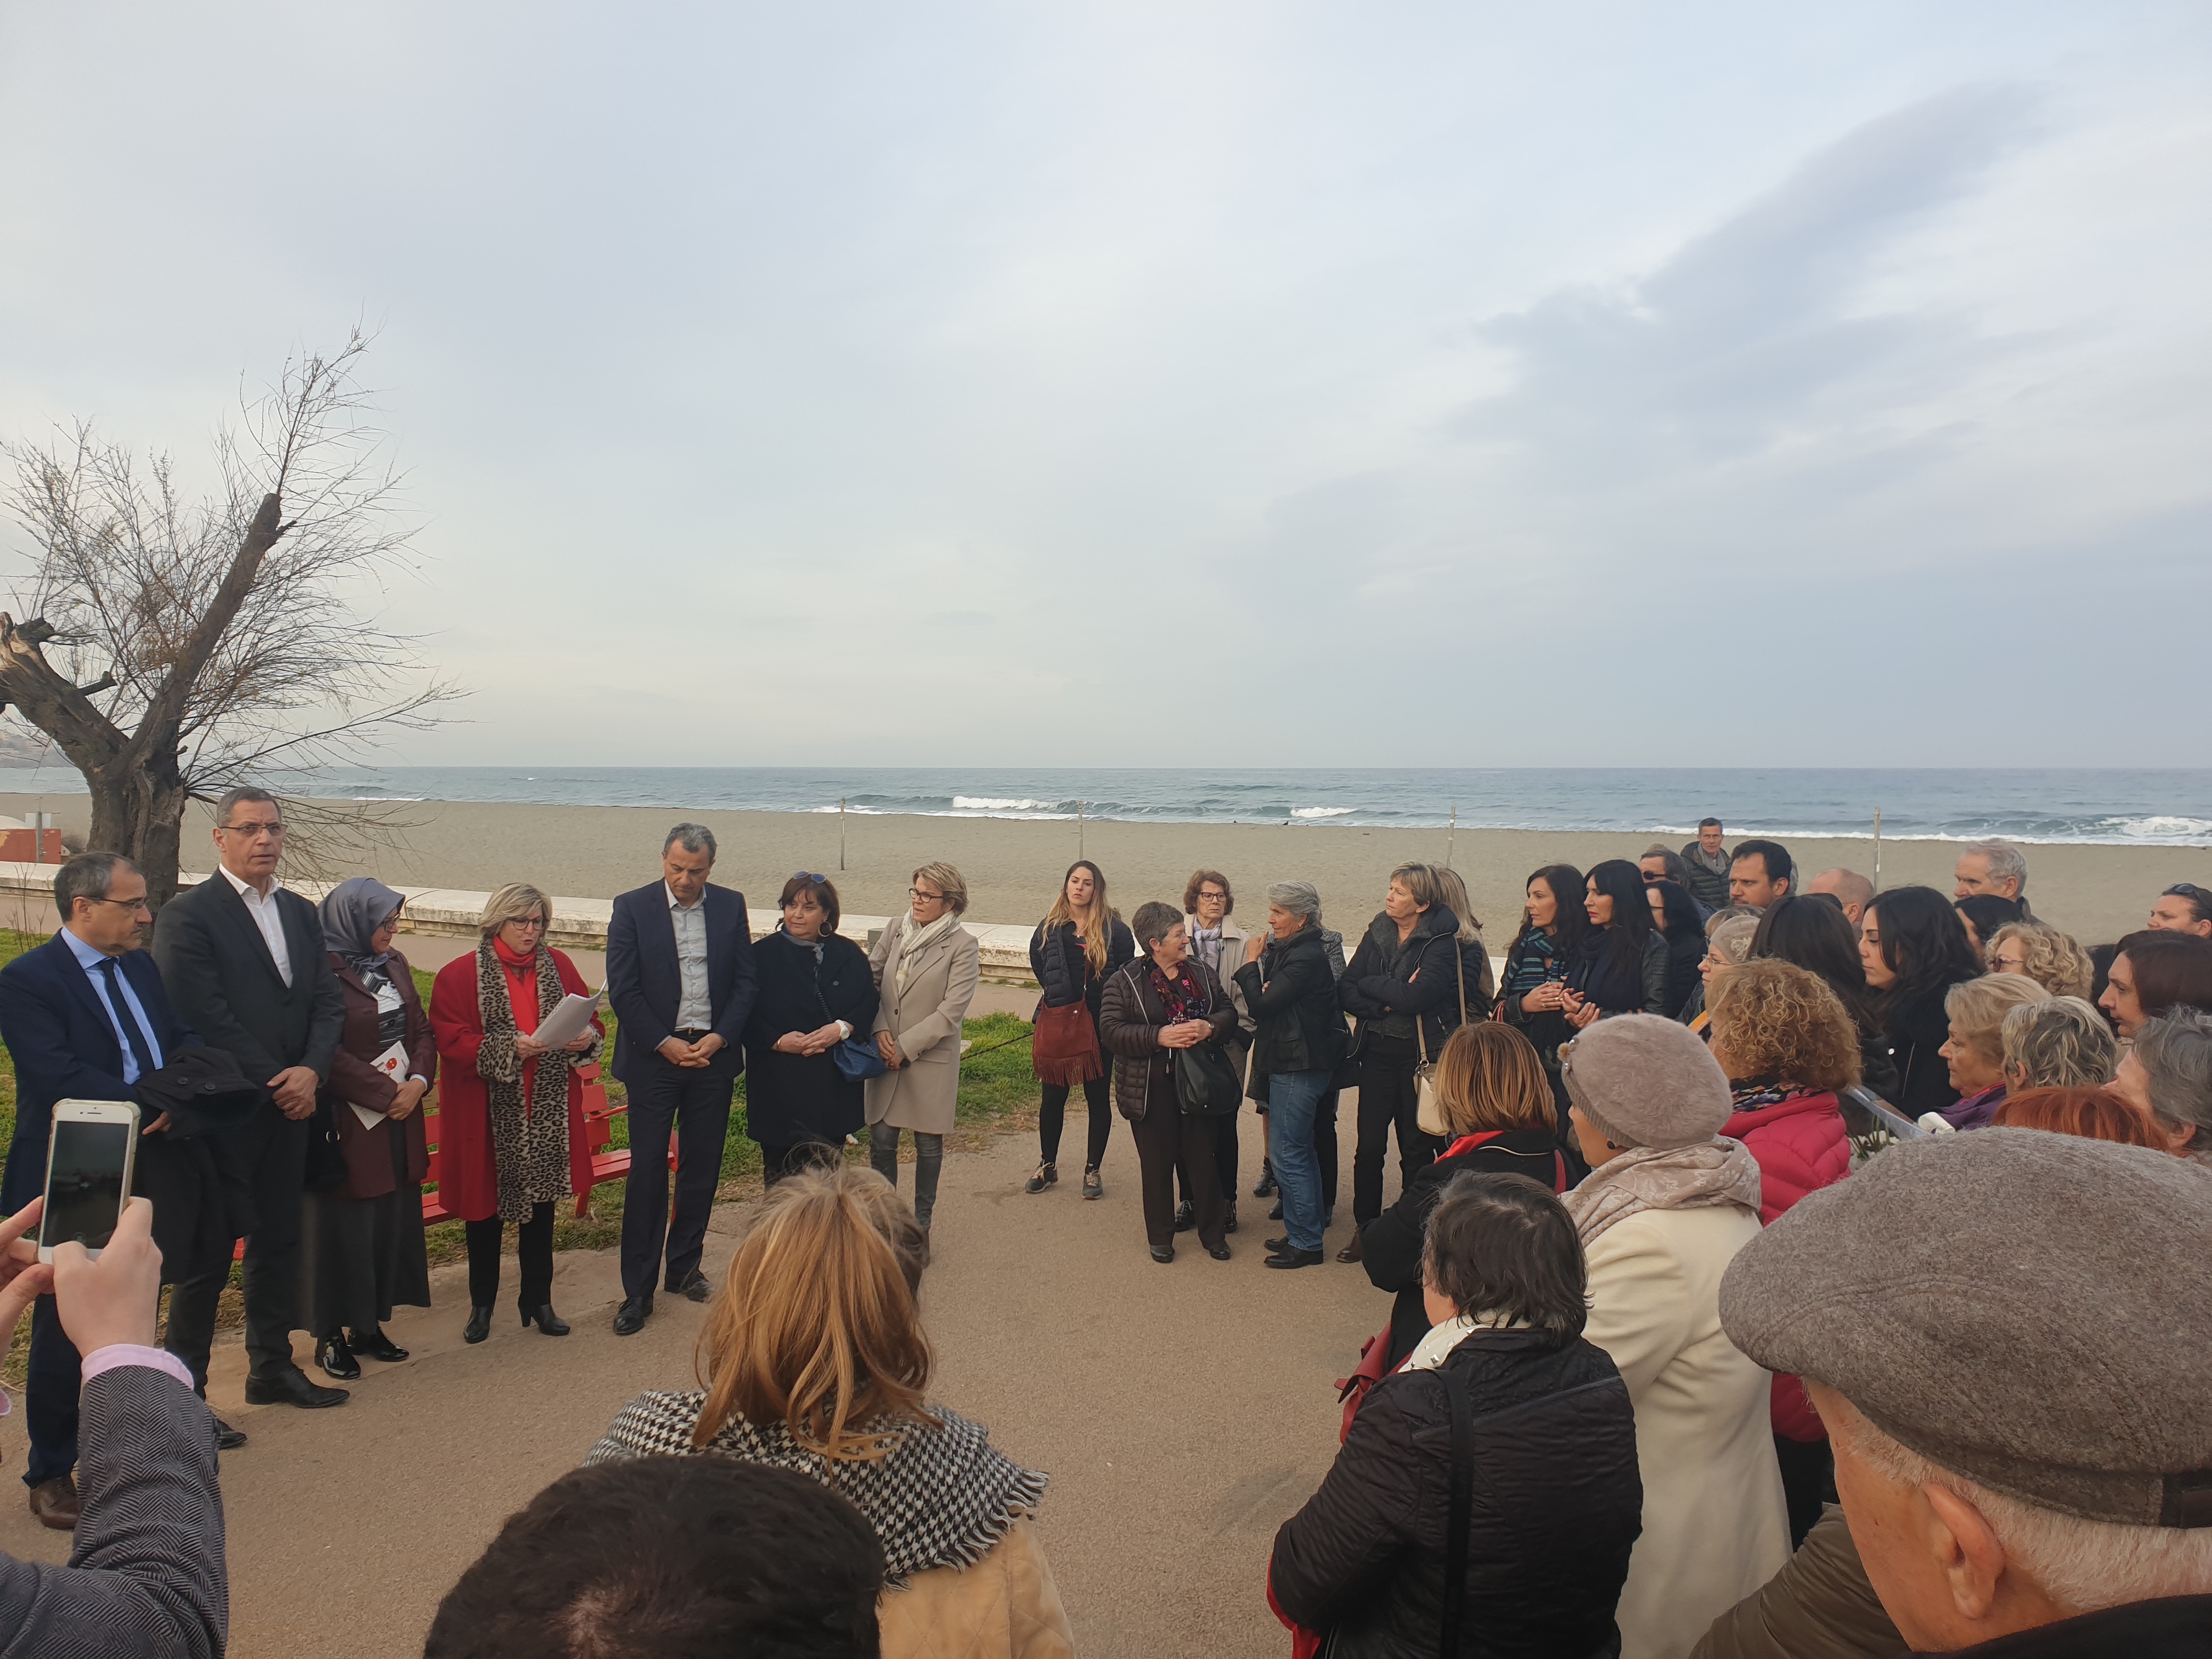 " La peur doit changer de camp ": des dizaines de personnes rassemblées à Bastia contre les violences faites aux femmes